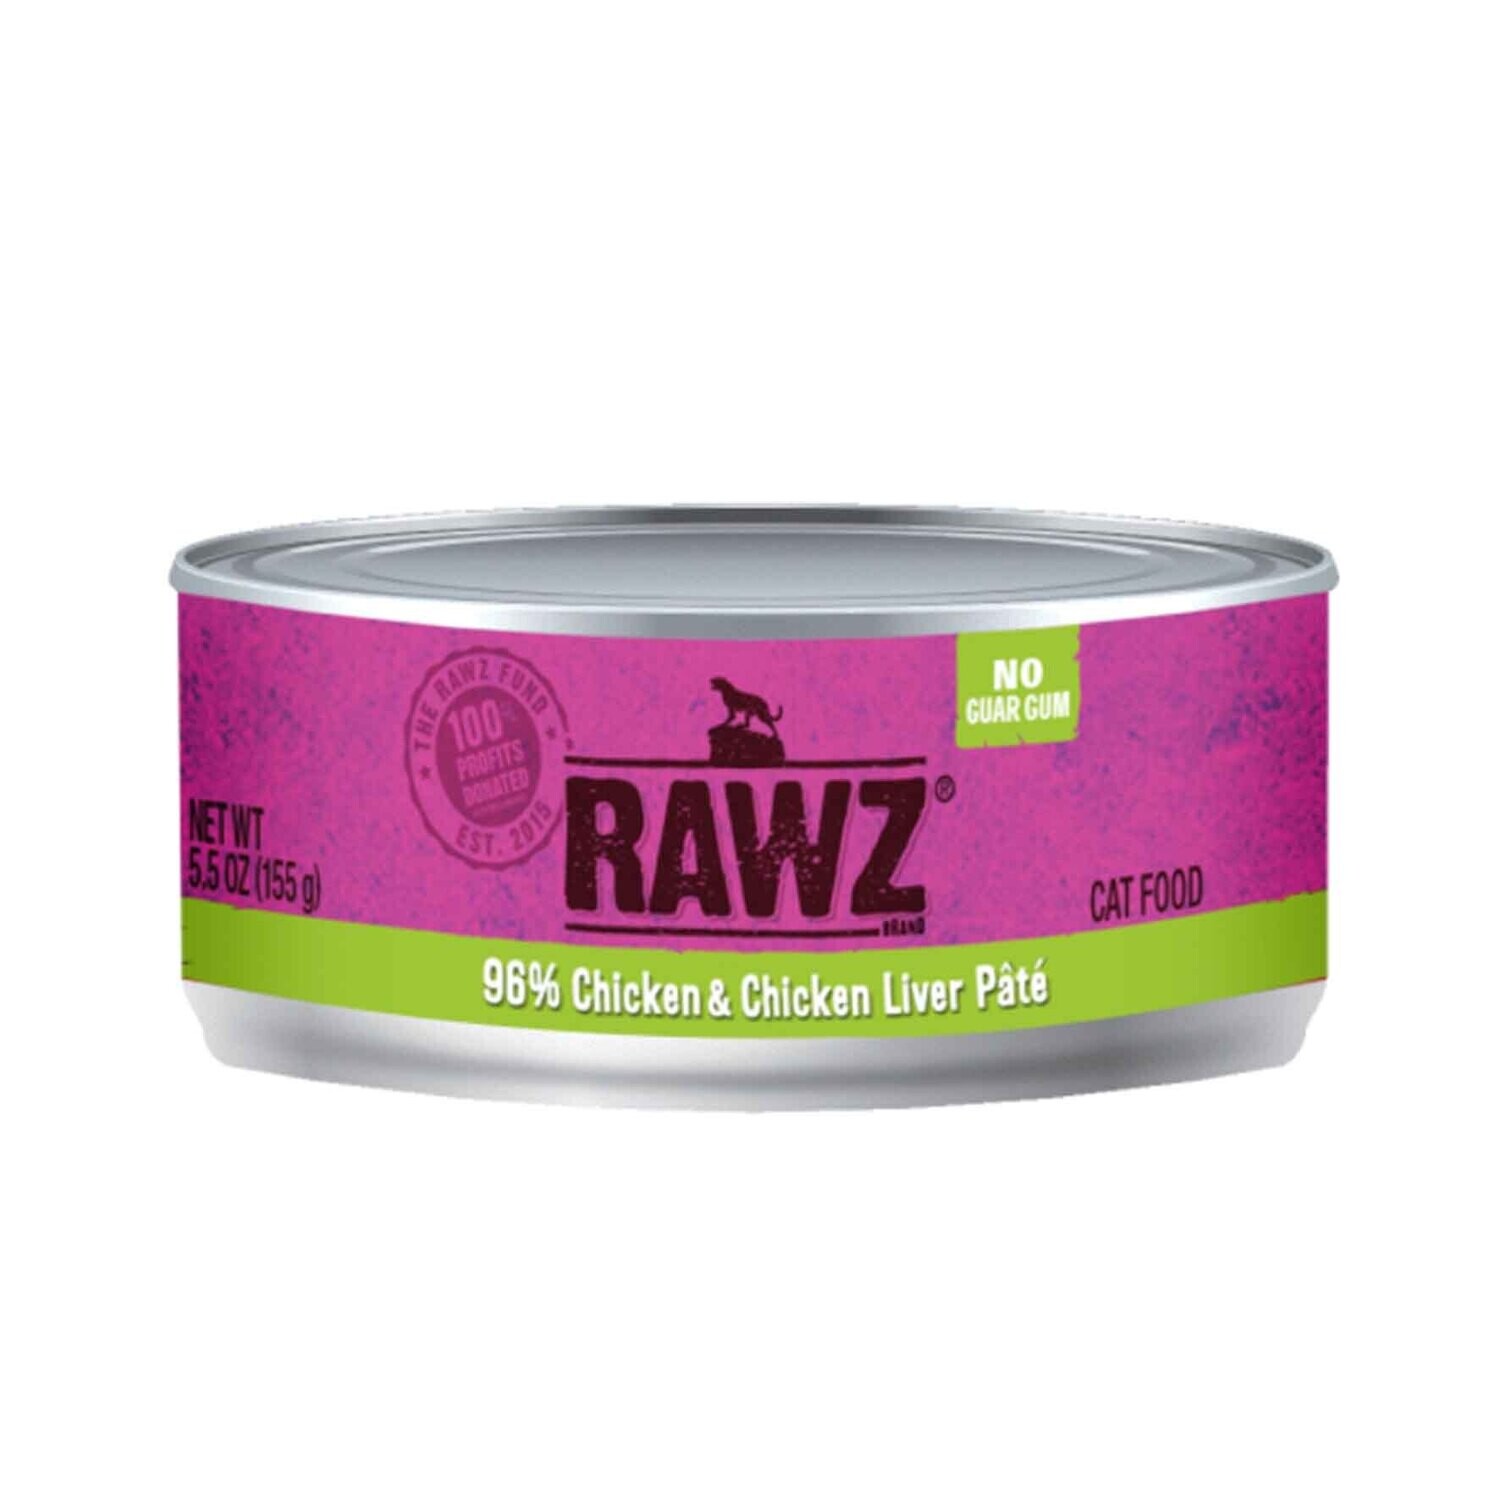 Rawz® Grain Free 96% Chicken & Chicken Liver Wet Cat Food